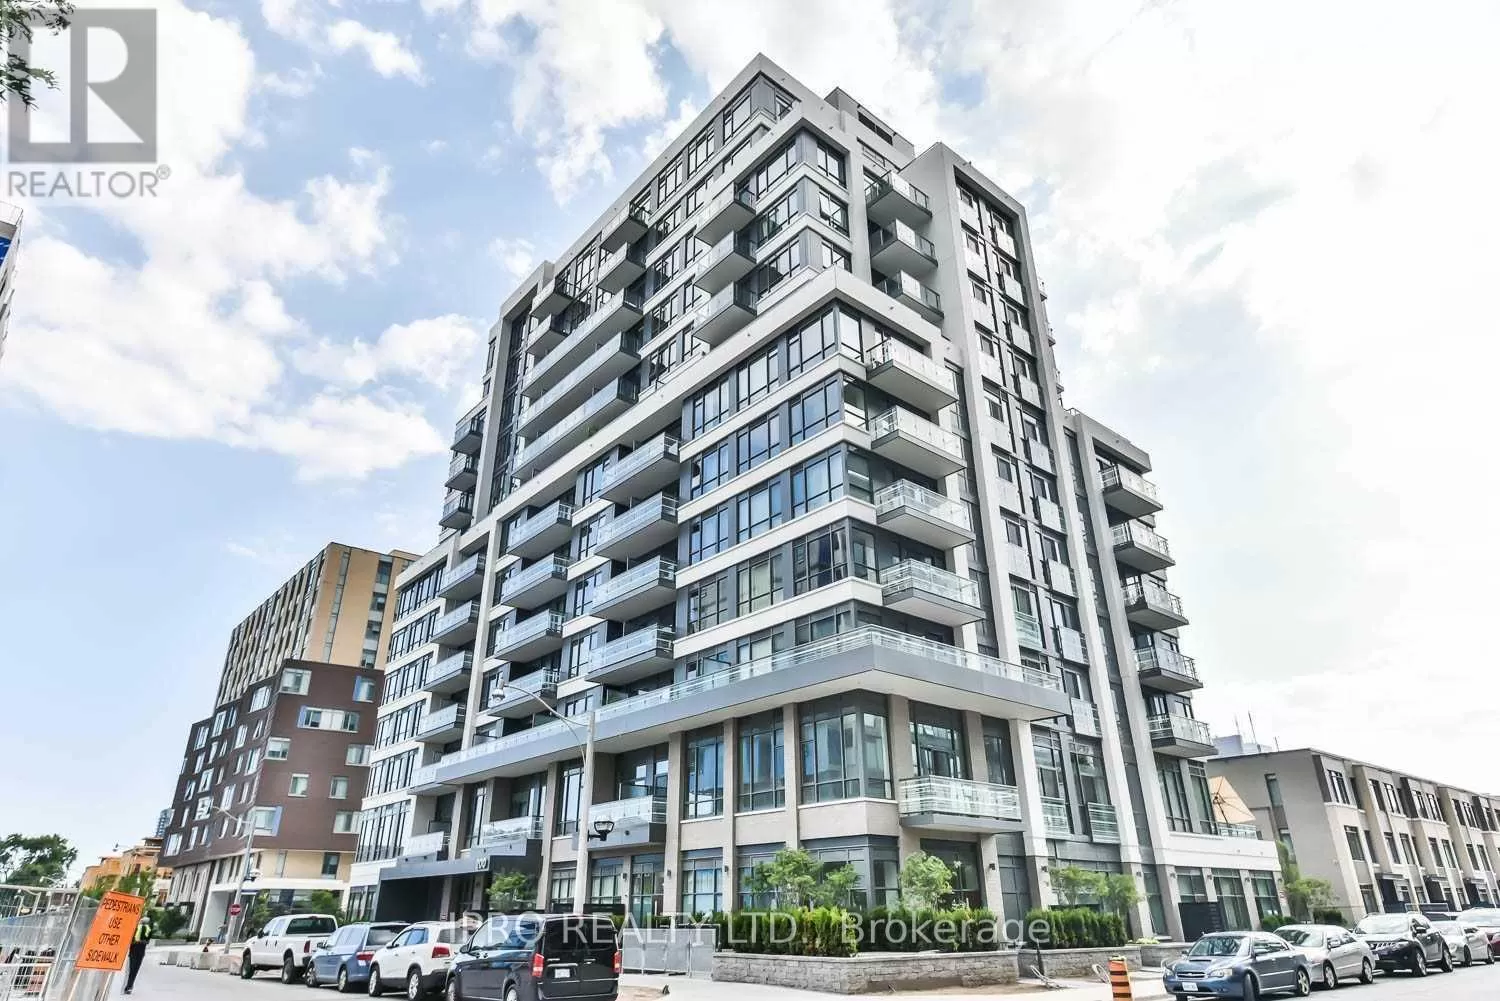 Apartment for rent: 1005 - 200 Sackville Street, Toronto, Ontario M5A 0C4